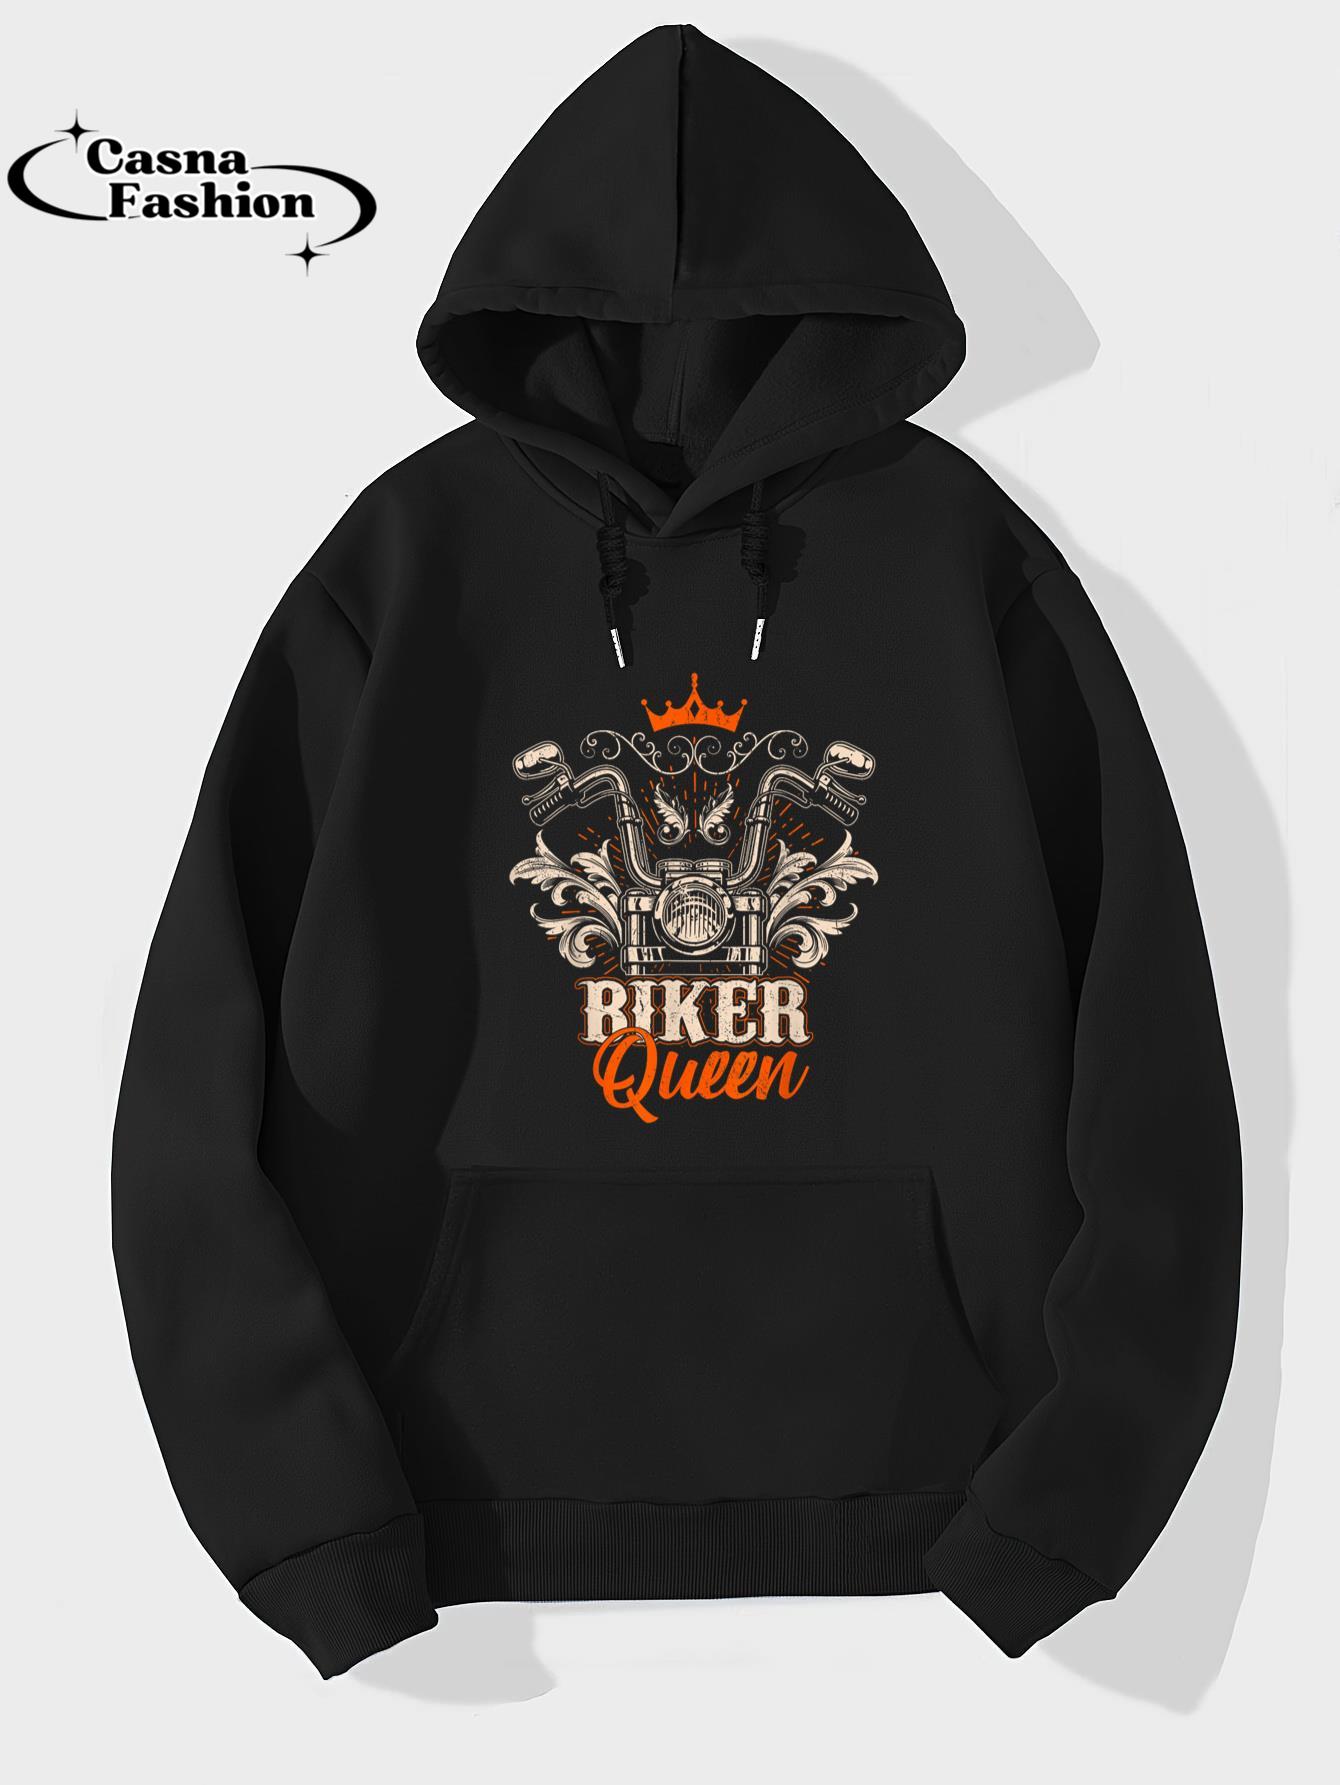 casnafashion_Hoodie_Motorcycle Queen Biker Girl Vintage Motorbike Biker Women T-Shirt_hoodie_black hoodie